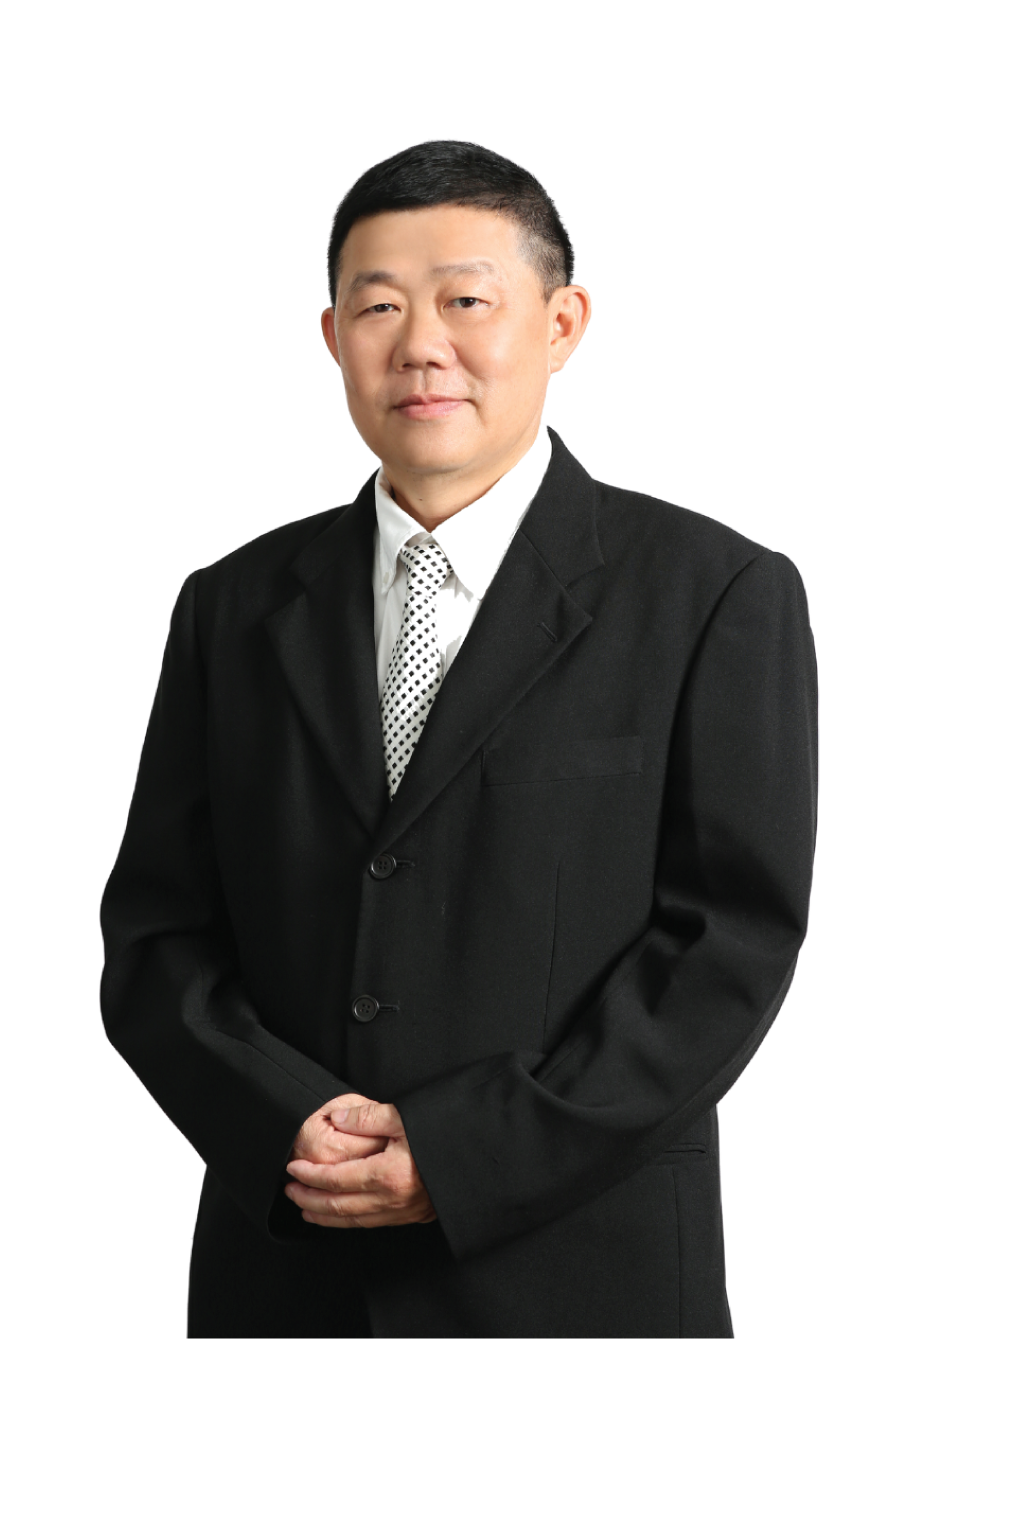 Mr. Tan Chong Boon